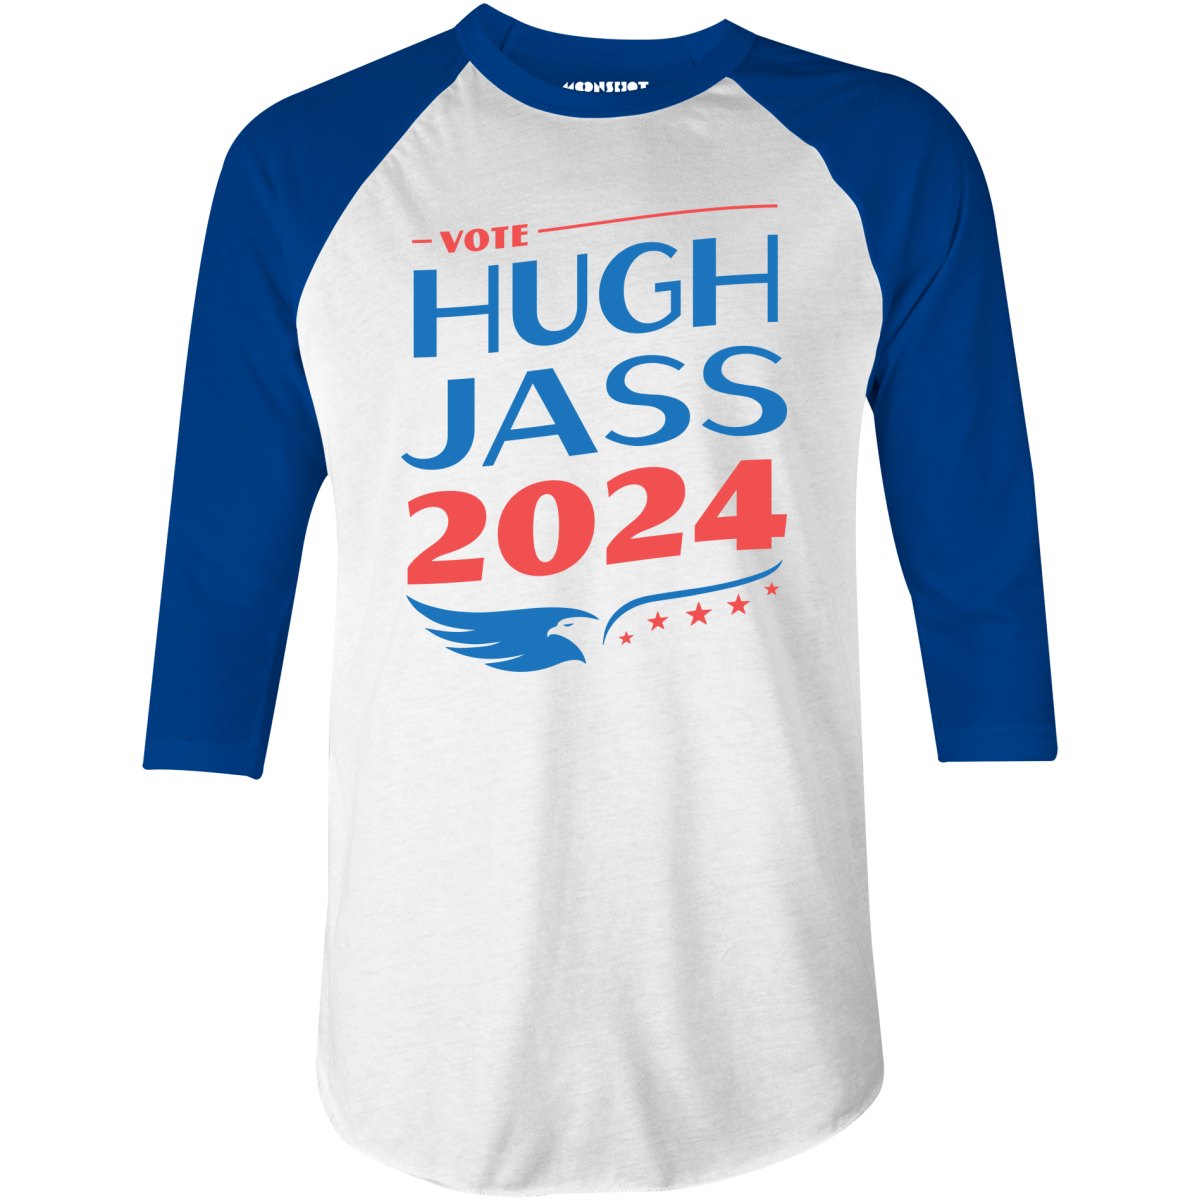 Hugh Jass 2024 - 3/4 Sleeve Raglan T-Shirt